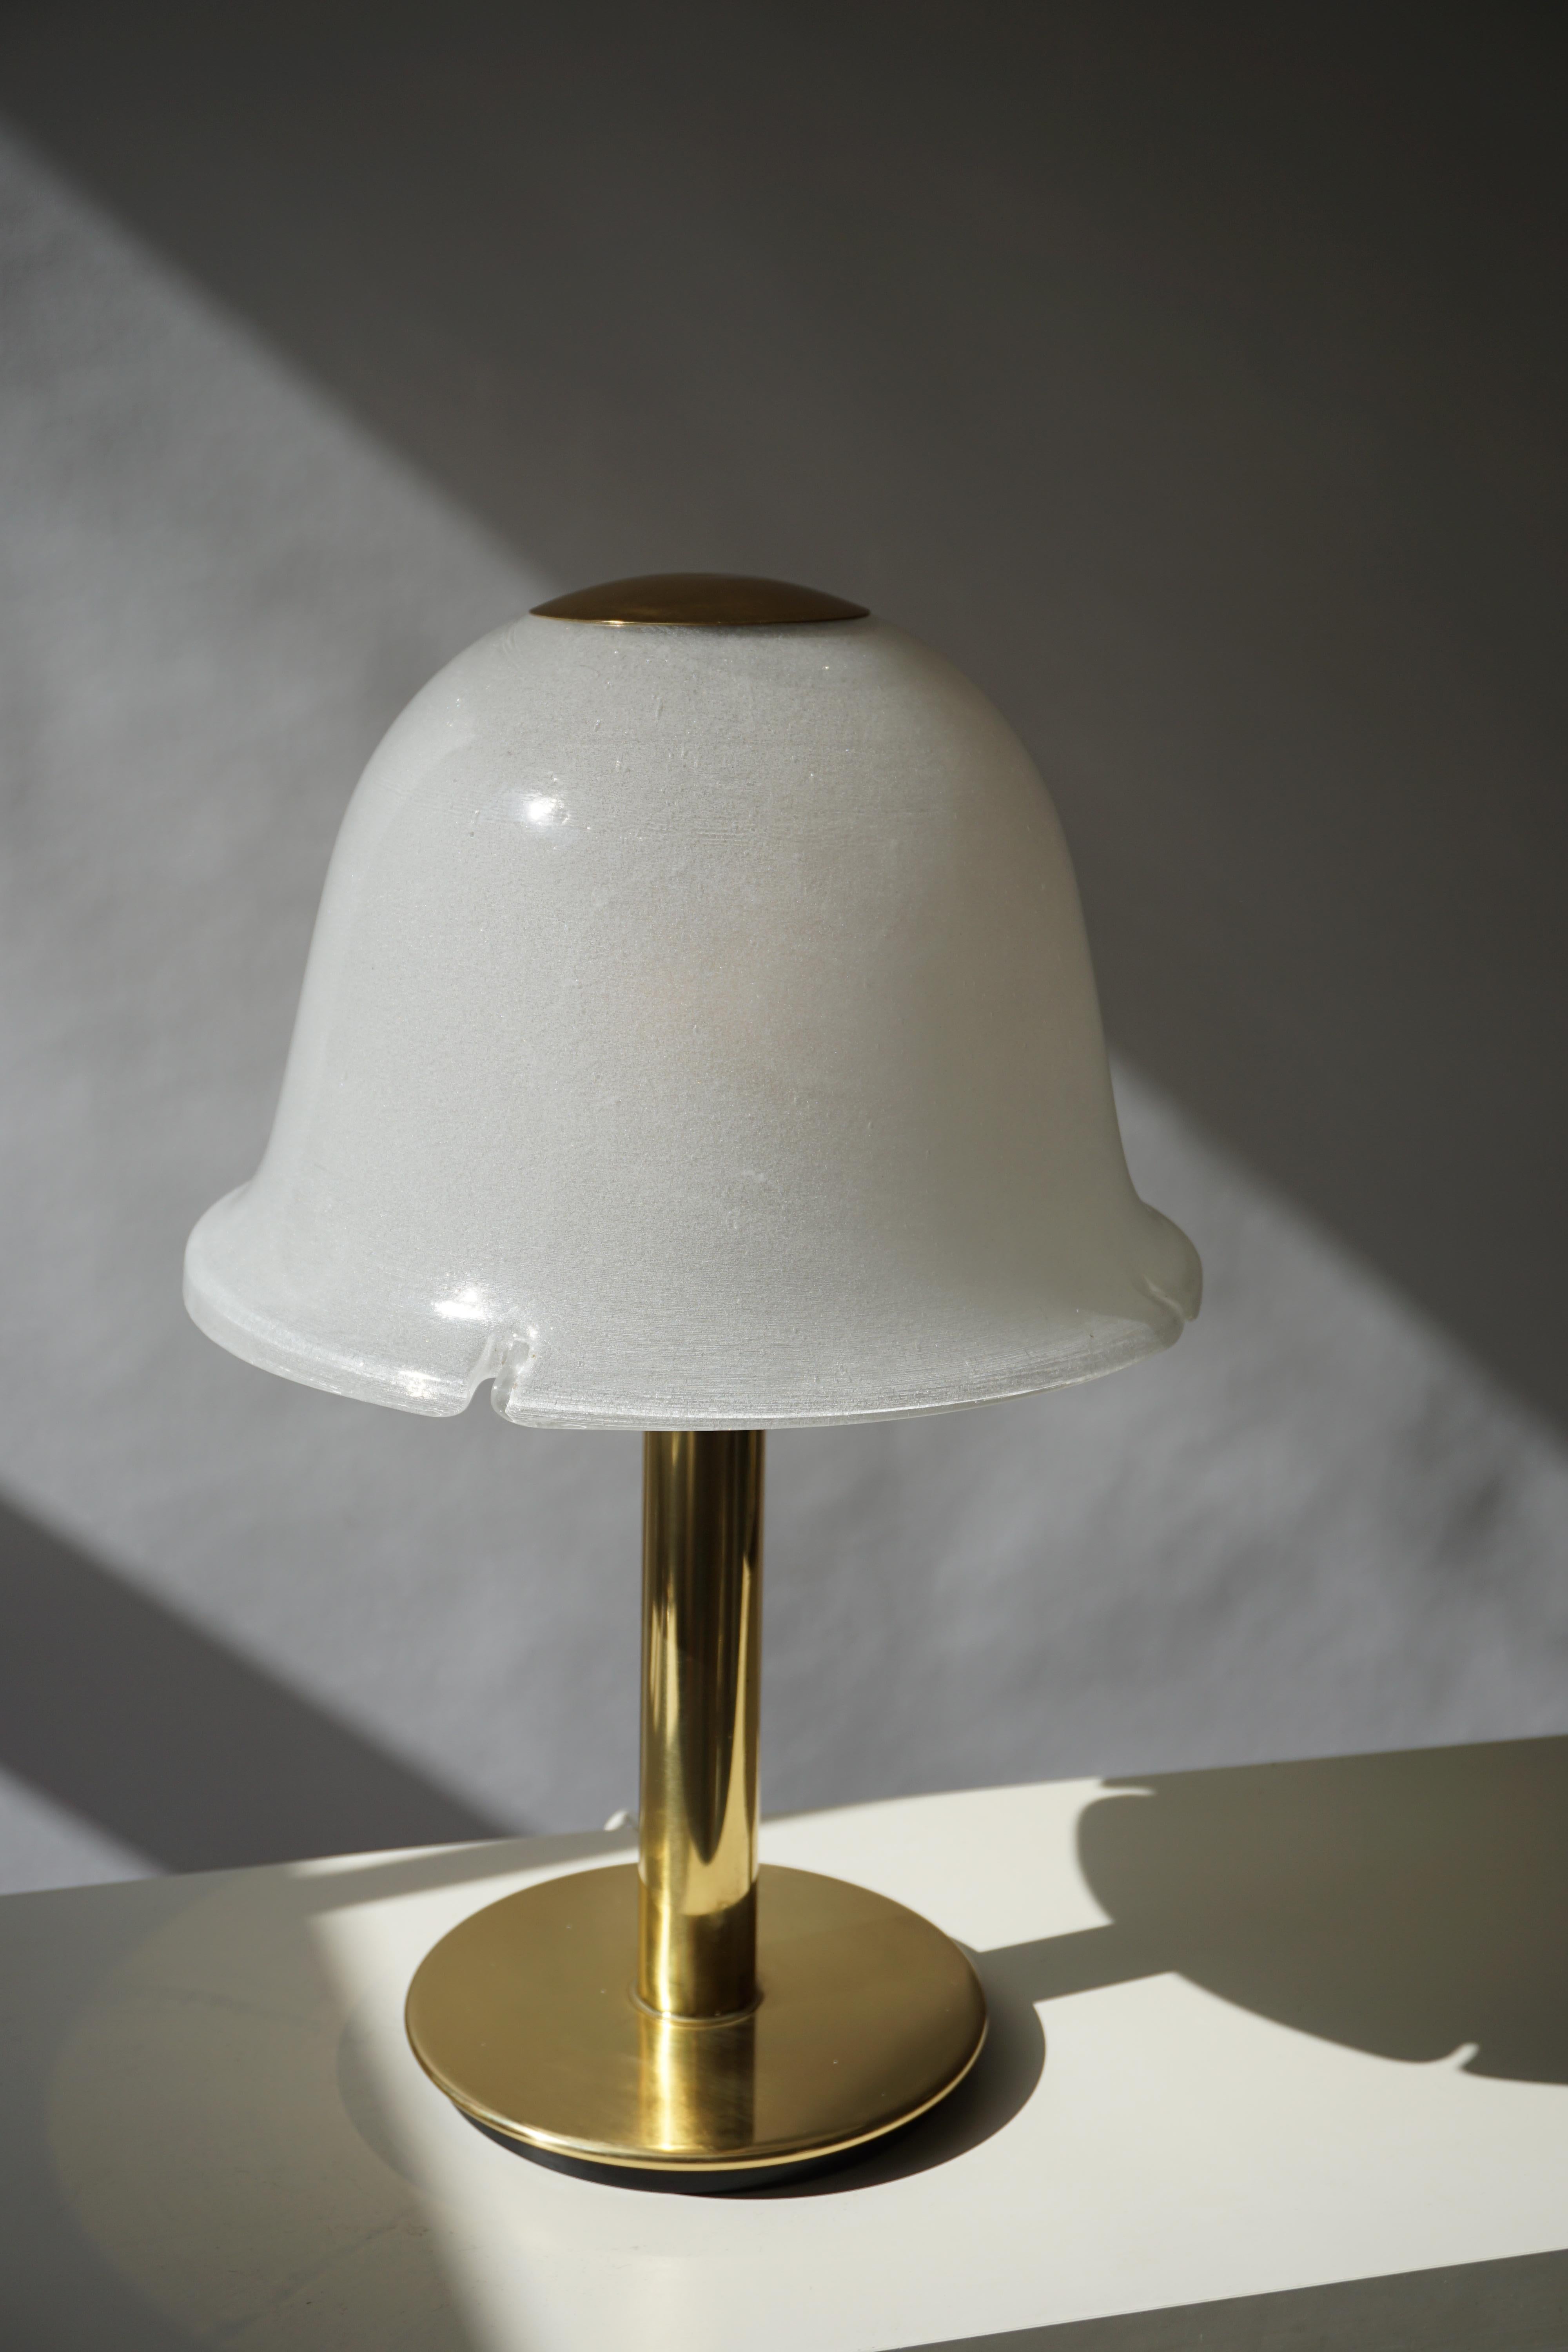 Italienische Tischlampe aus Murano-Glas und Messing.
Maße: Durchmesser 36 cm.
Höhe 56 cm.
Eine E27-Glühbirne.